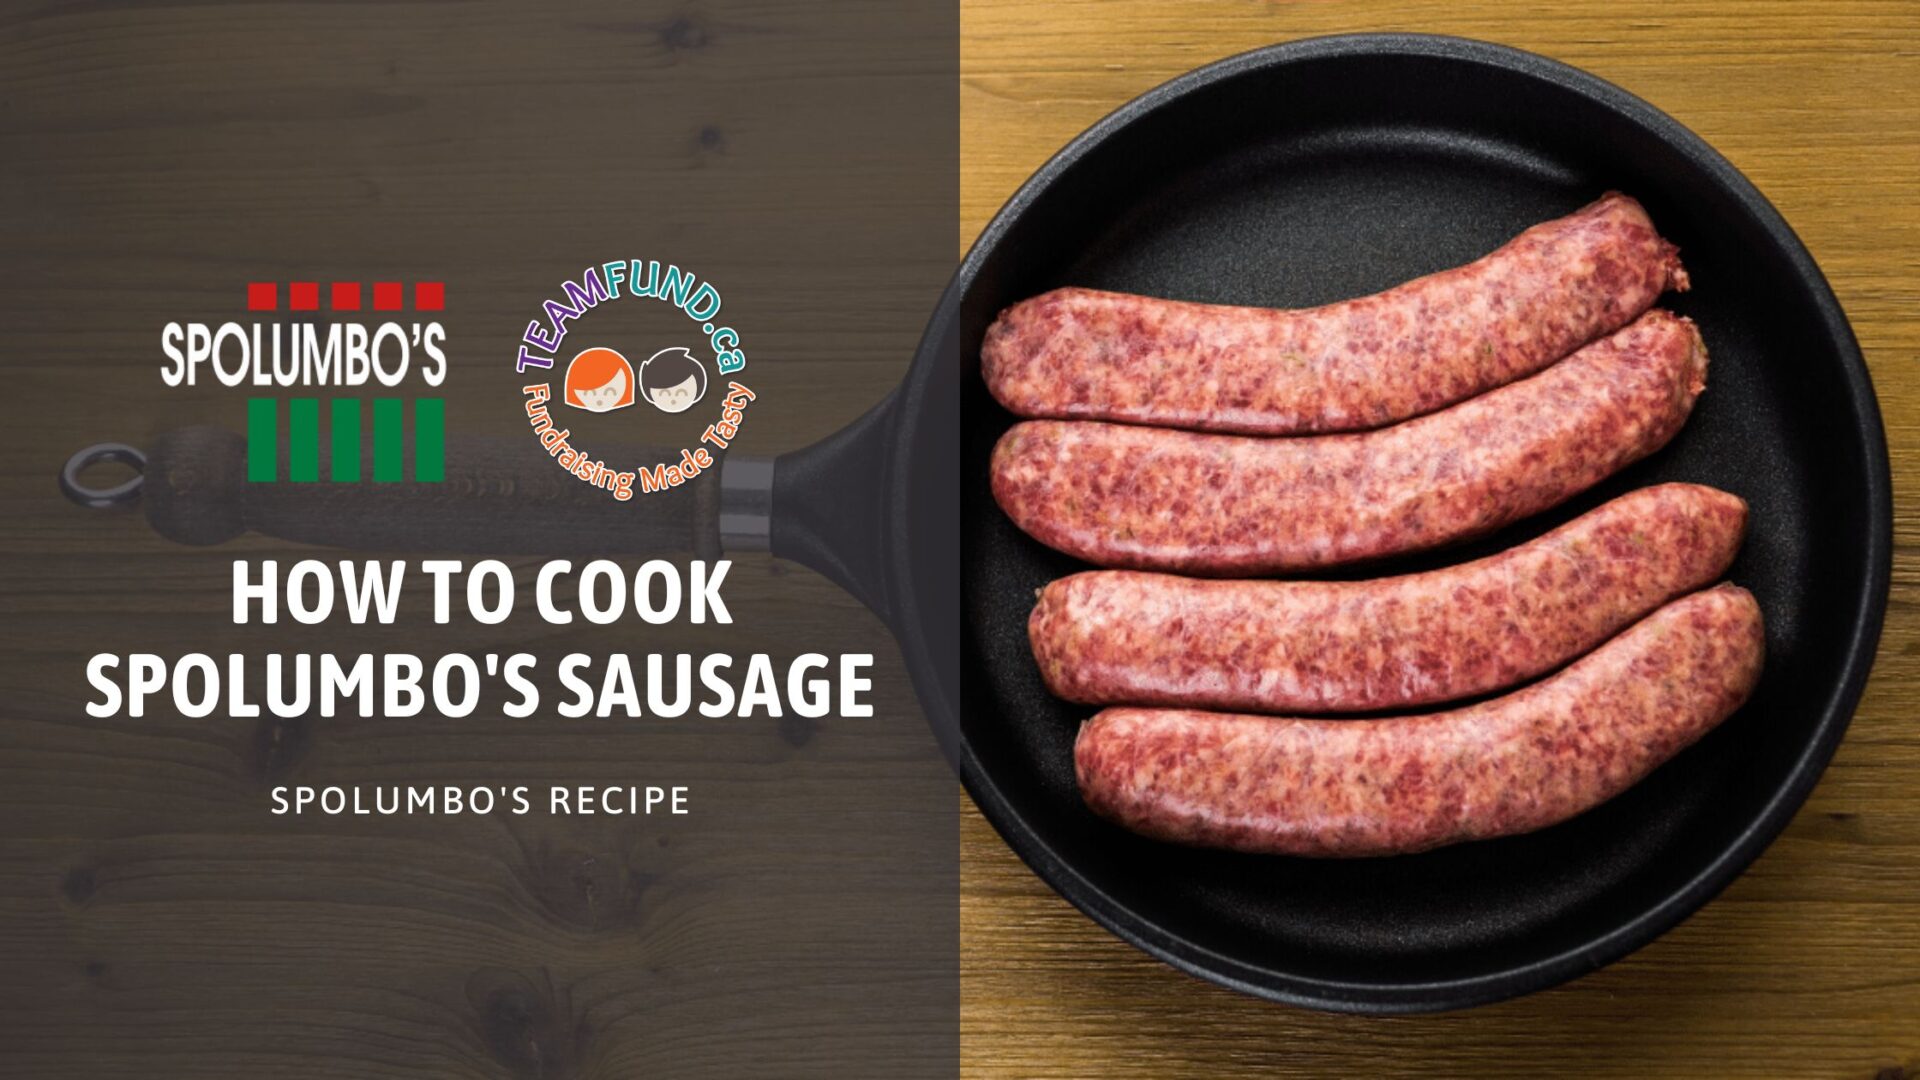 How To Cook Spolumbo’s Sausage